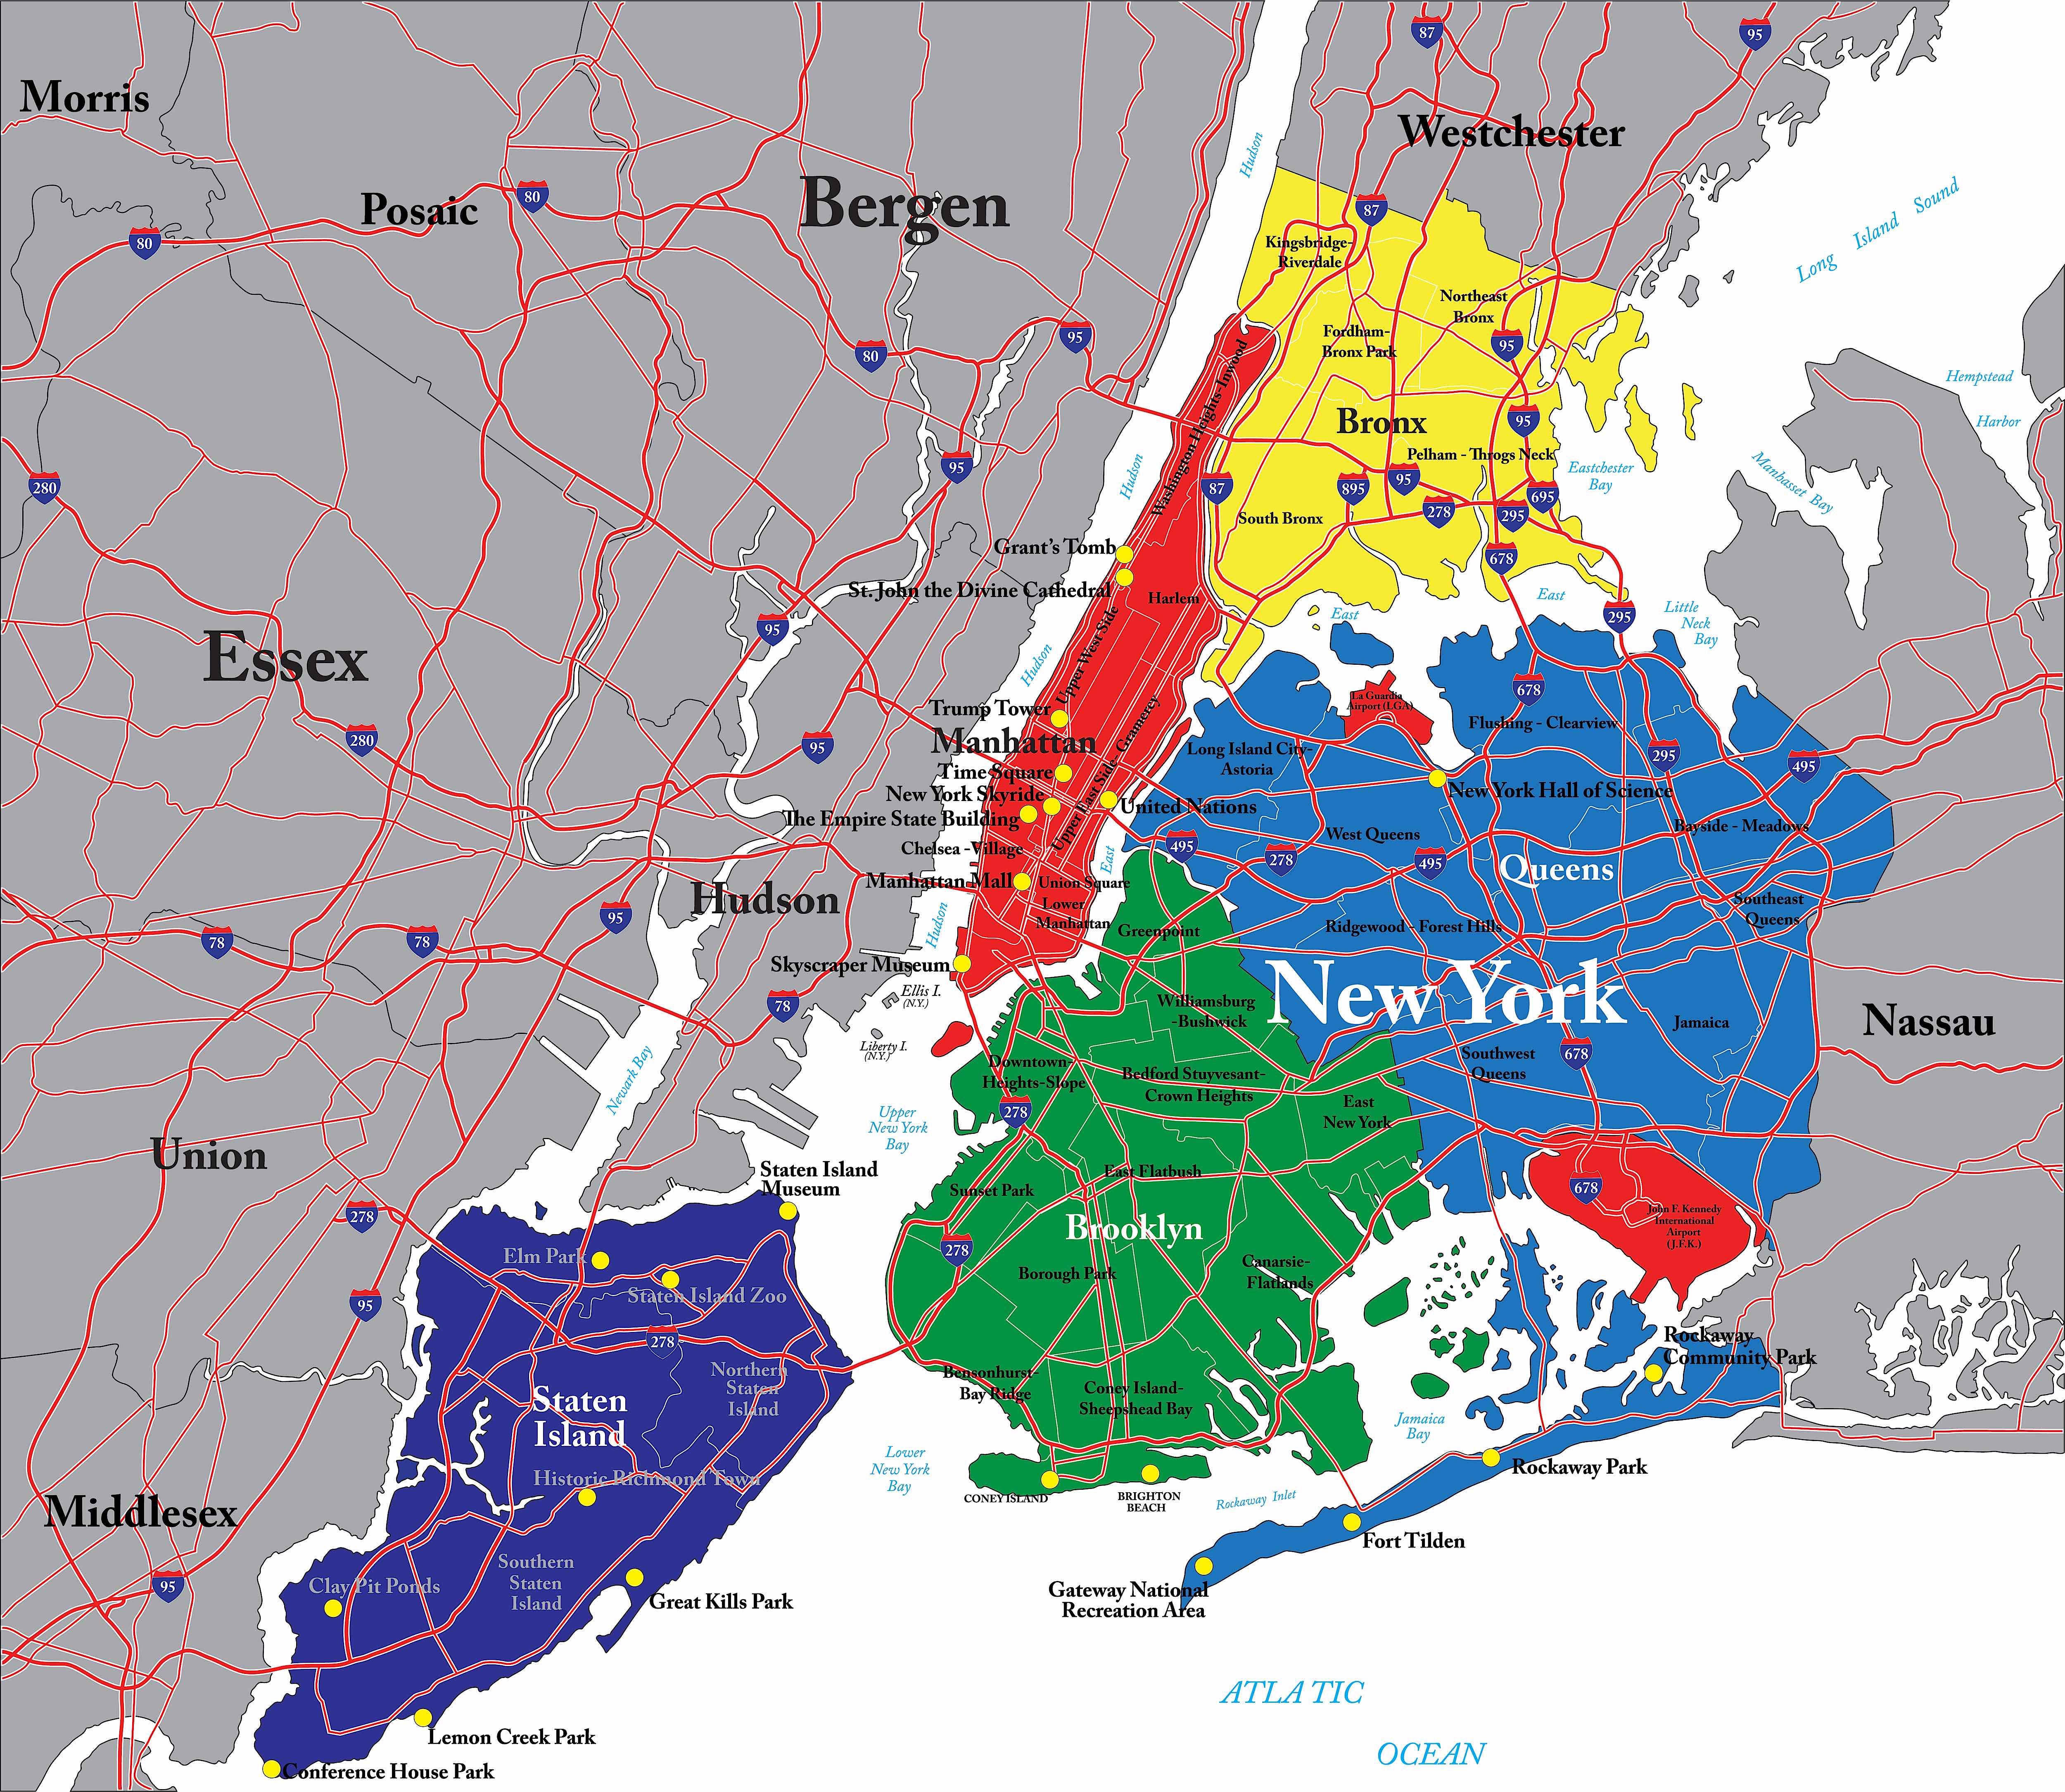 Map of Long Island, NY neighborhoods